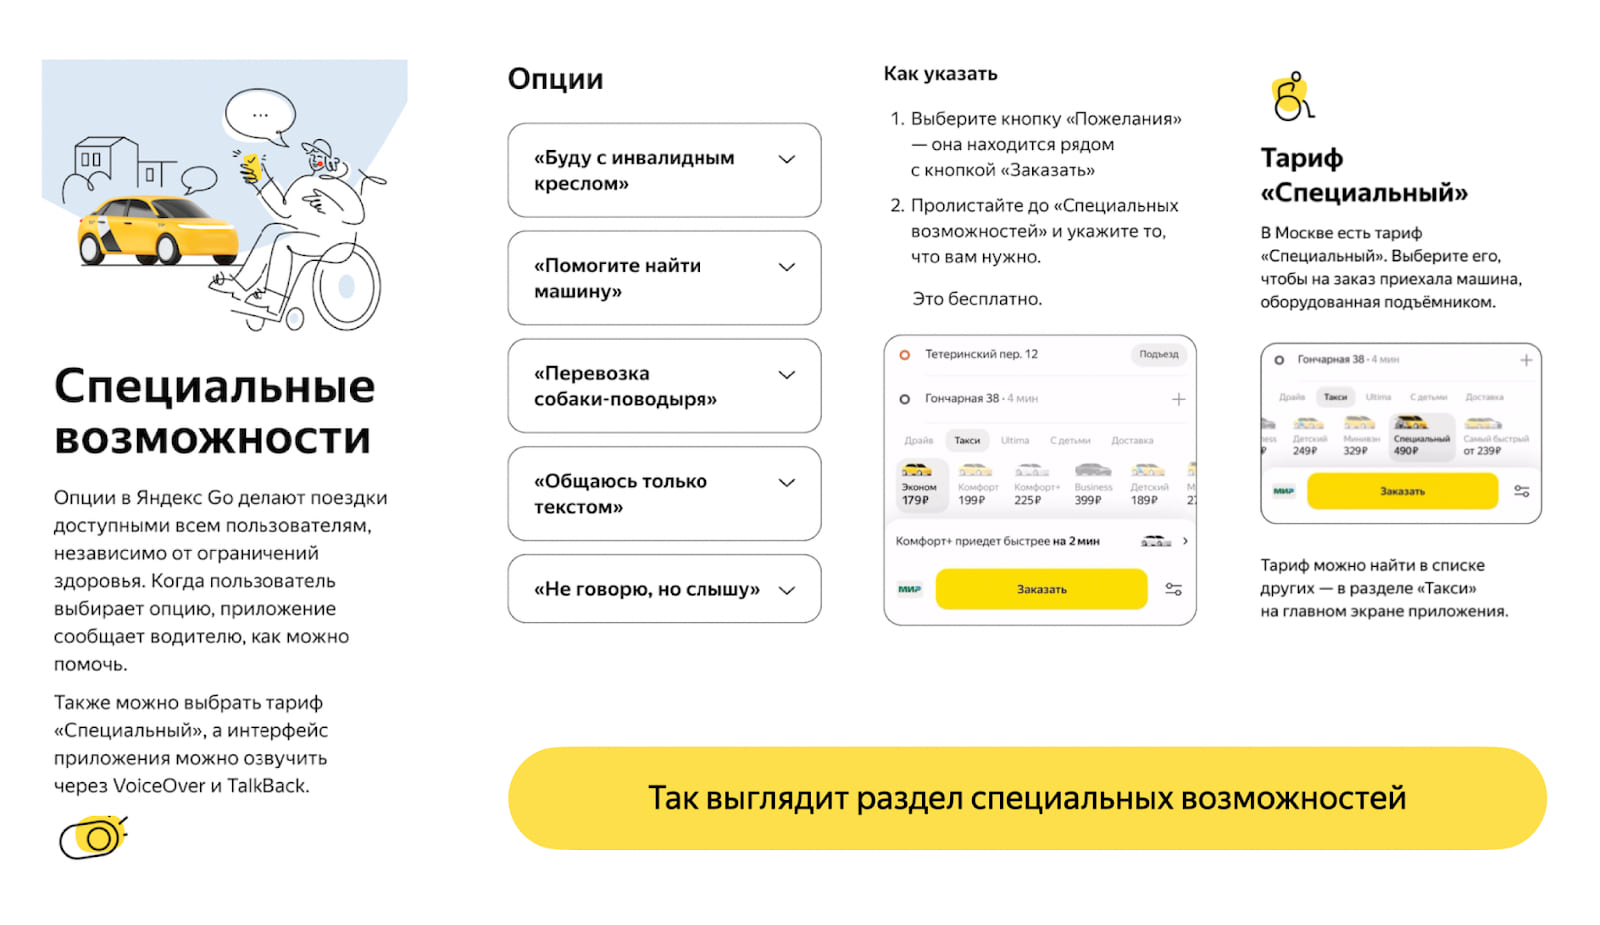 Яндекс Go запустил проект о непредвзятом отношении людей друг к другу  «Видеть человека» - Трушеринг